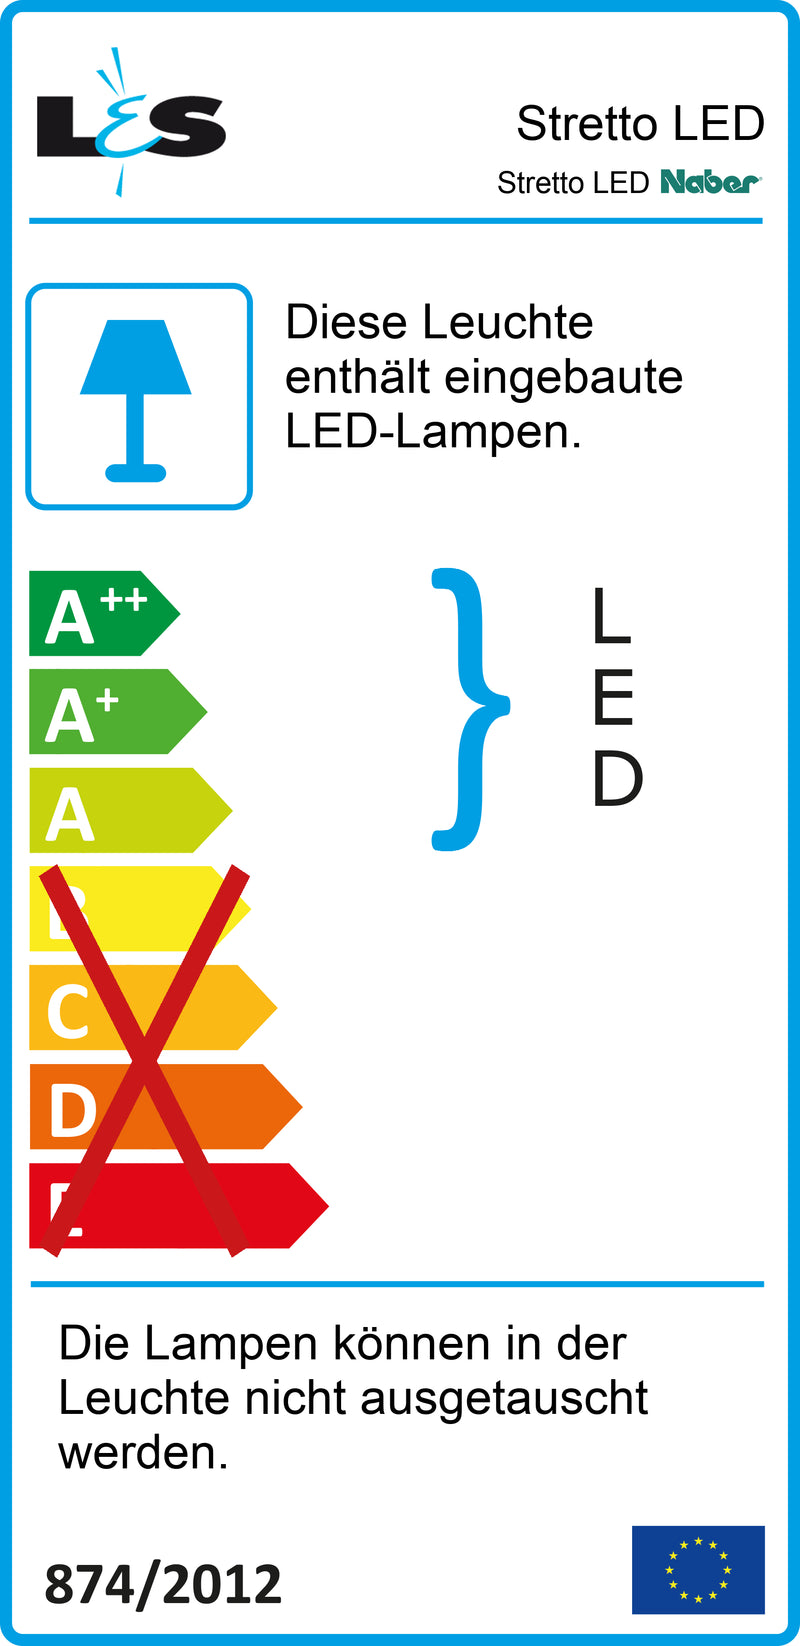 E-Label zu Zeichnung zu Stretto LED als Variante Set-3 von Naber GmbH in der Kategorie Lichttechnik in Österreich auf conceptshop.at